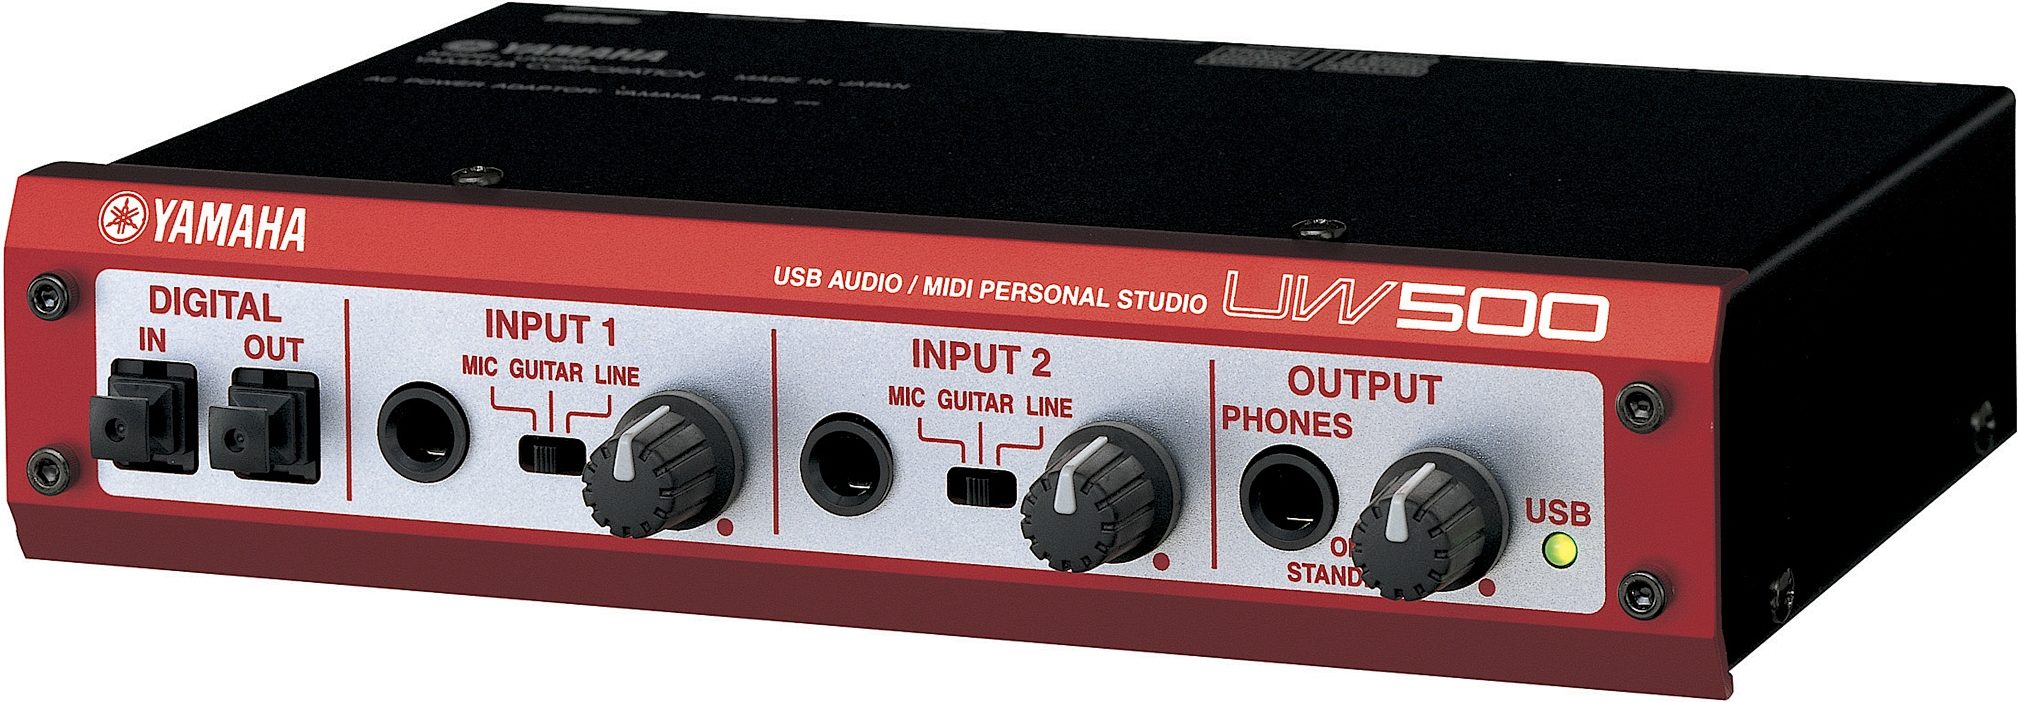 Yamaha UW500 USB Audio | zZounds